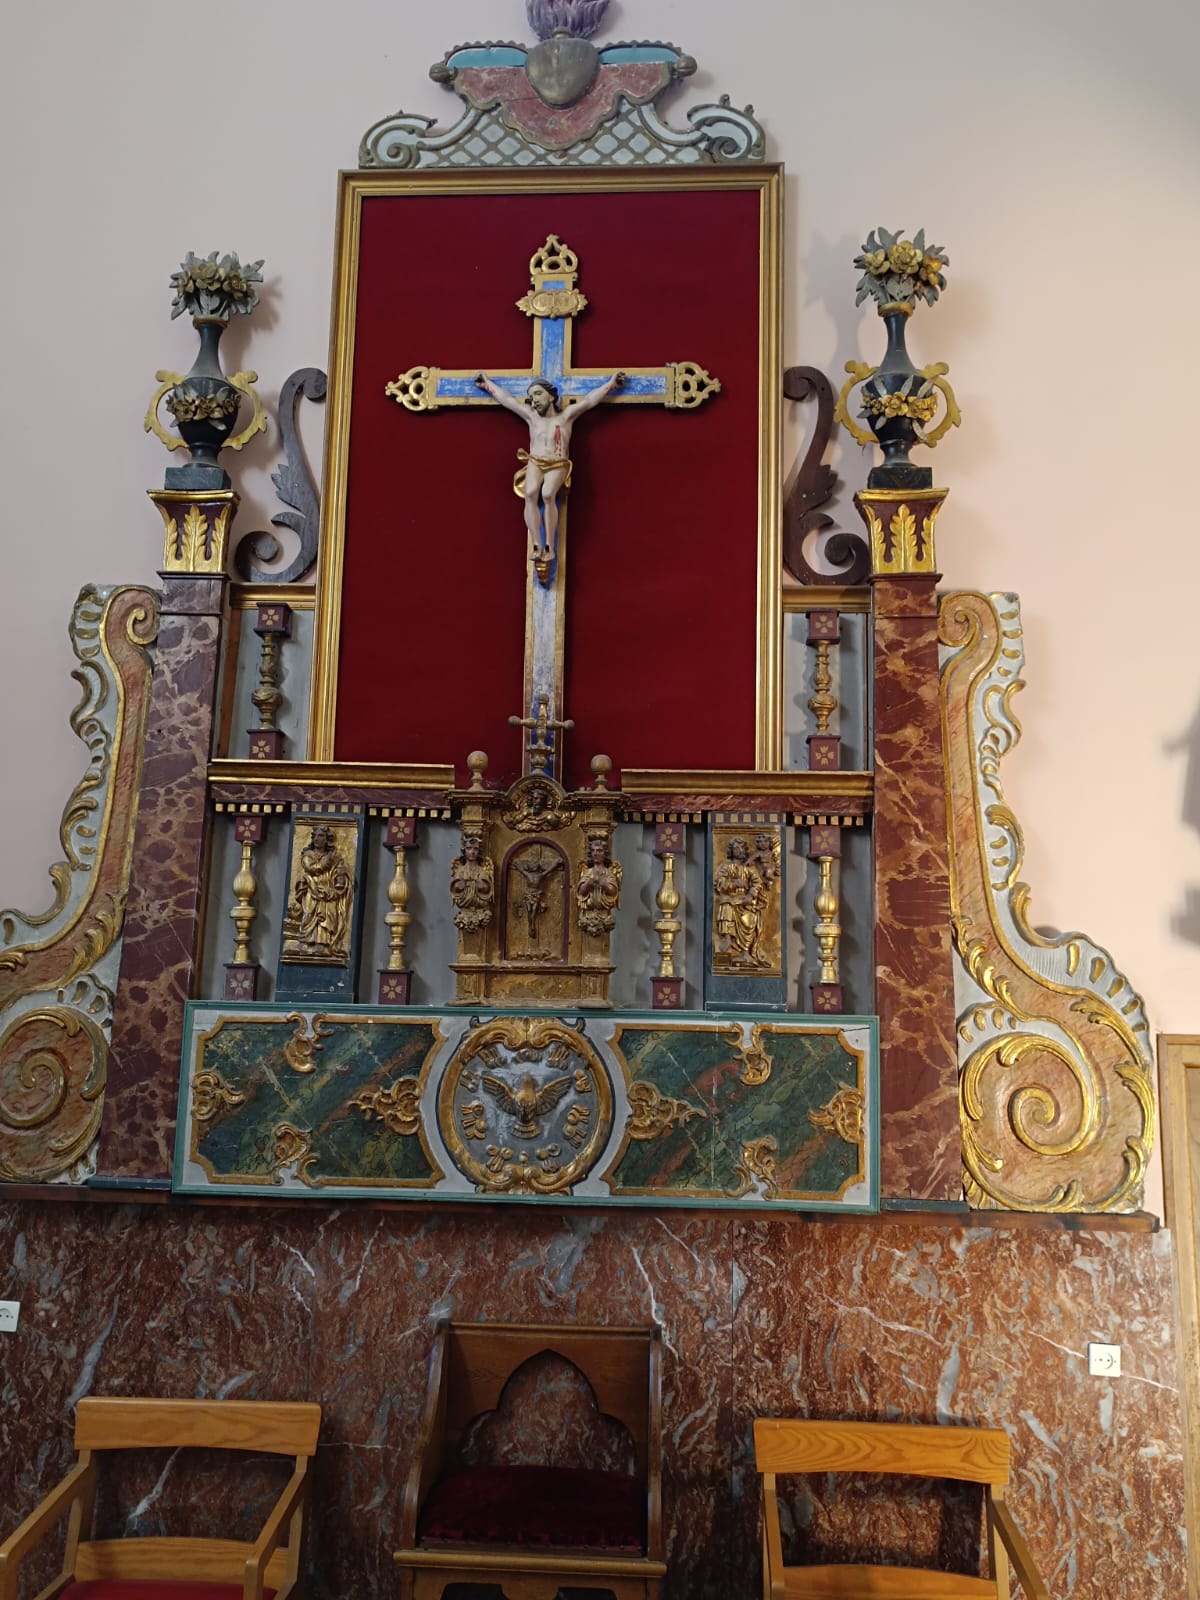 le rétable qui en fait serait les restes de l'autel de Sainte Catherine , à la place de la croix il y avait une statue de la sainte